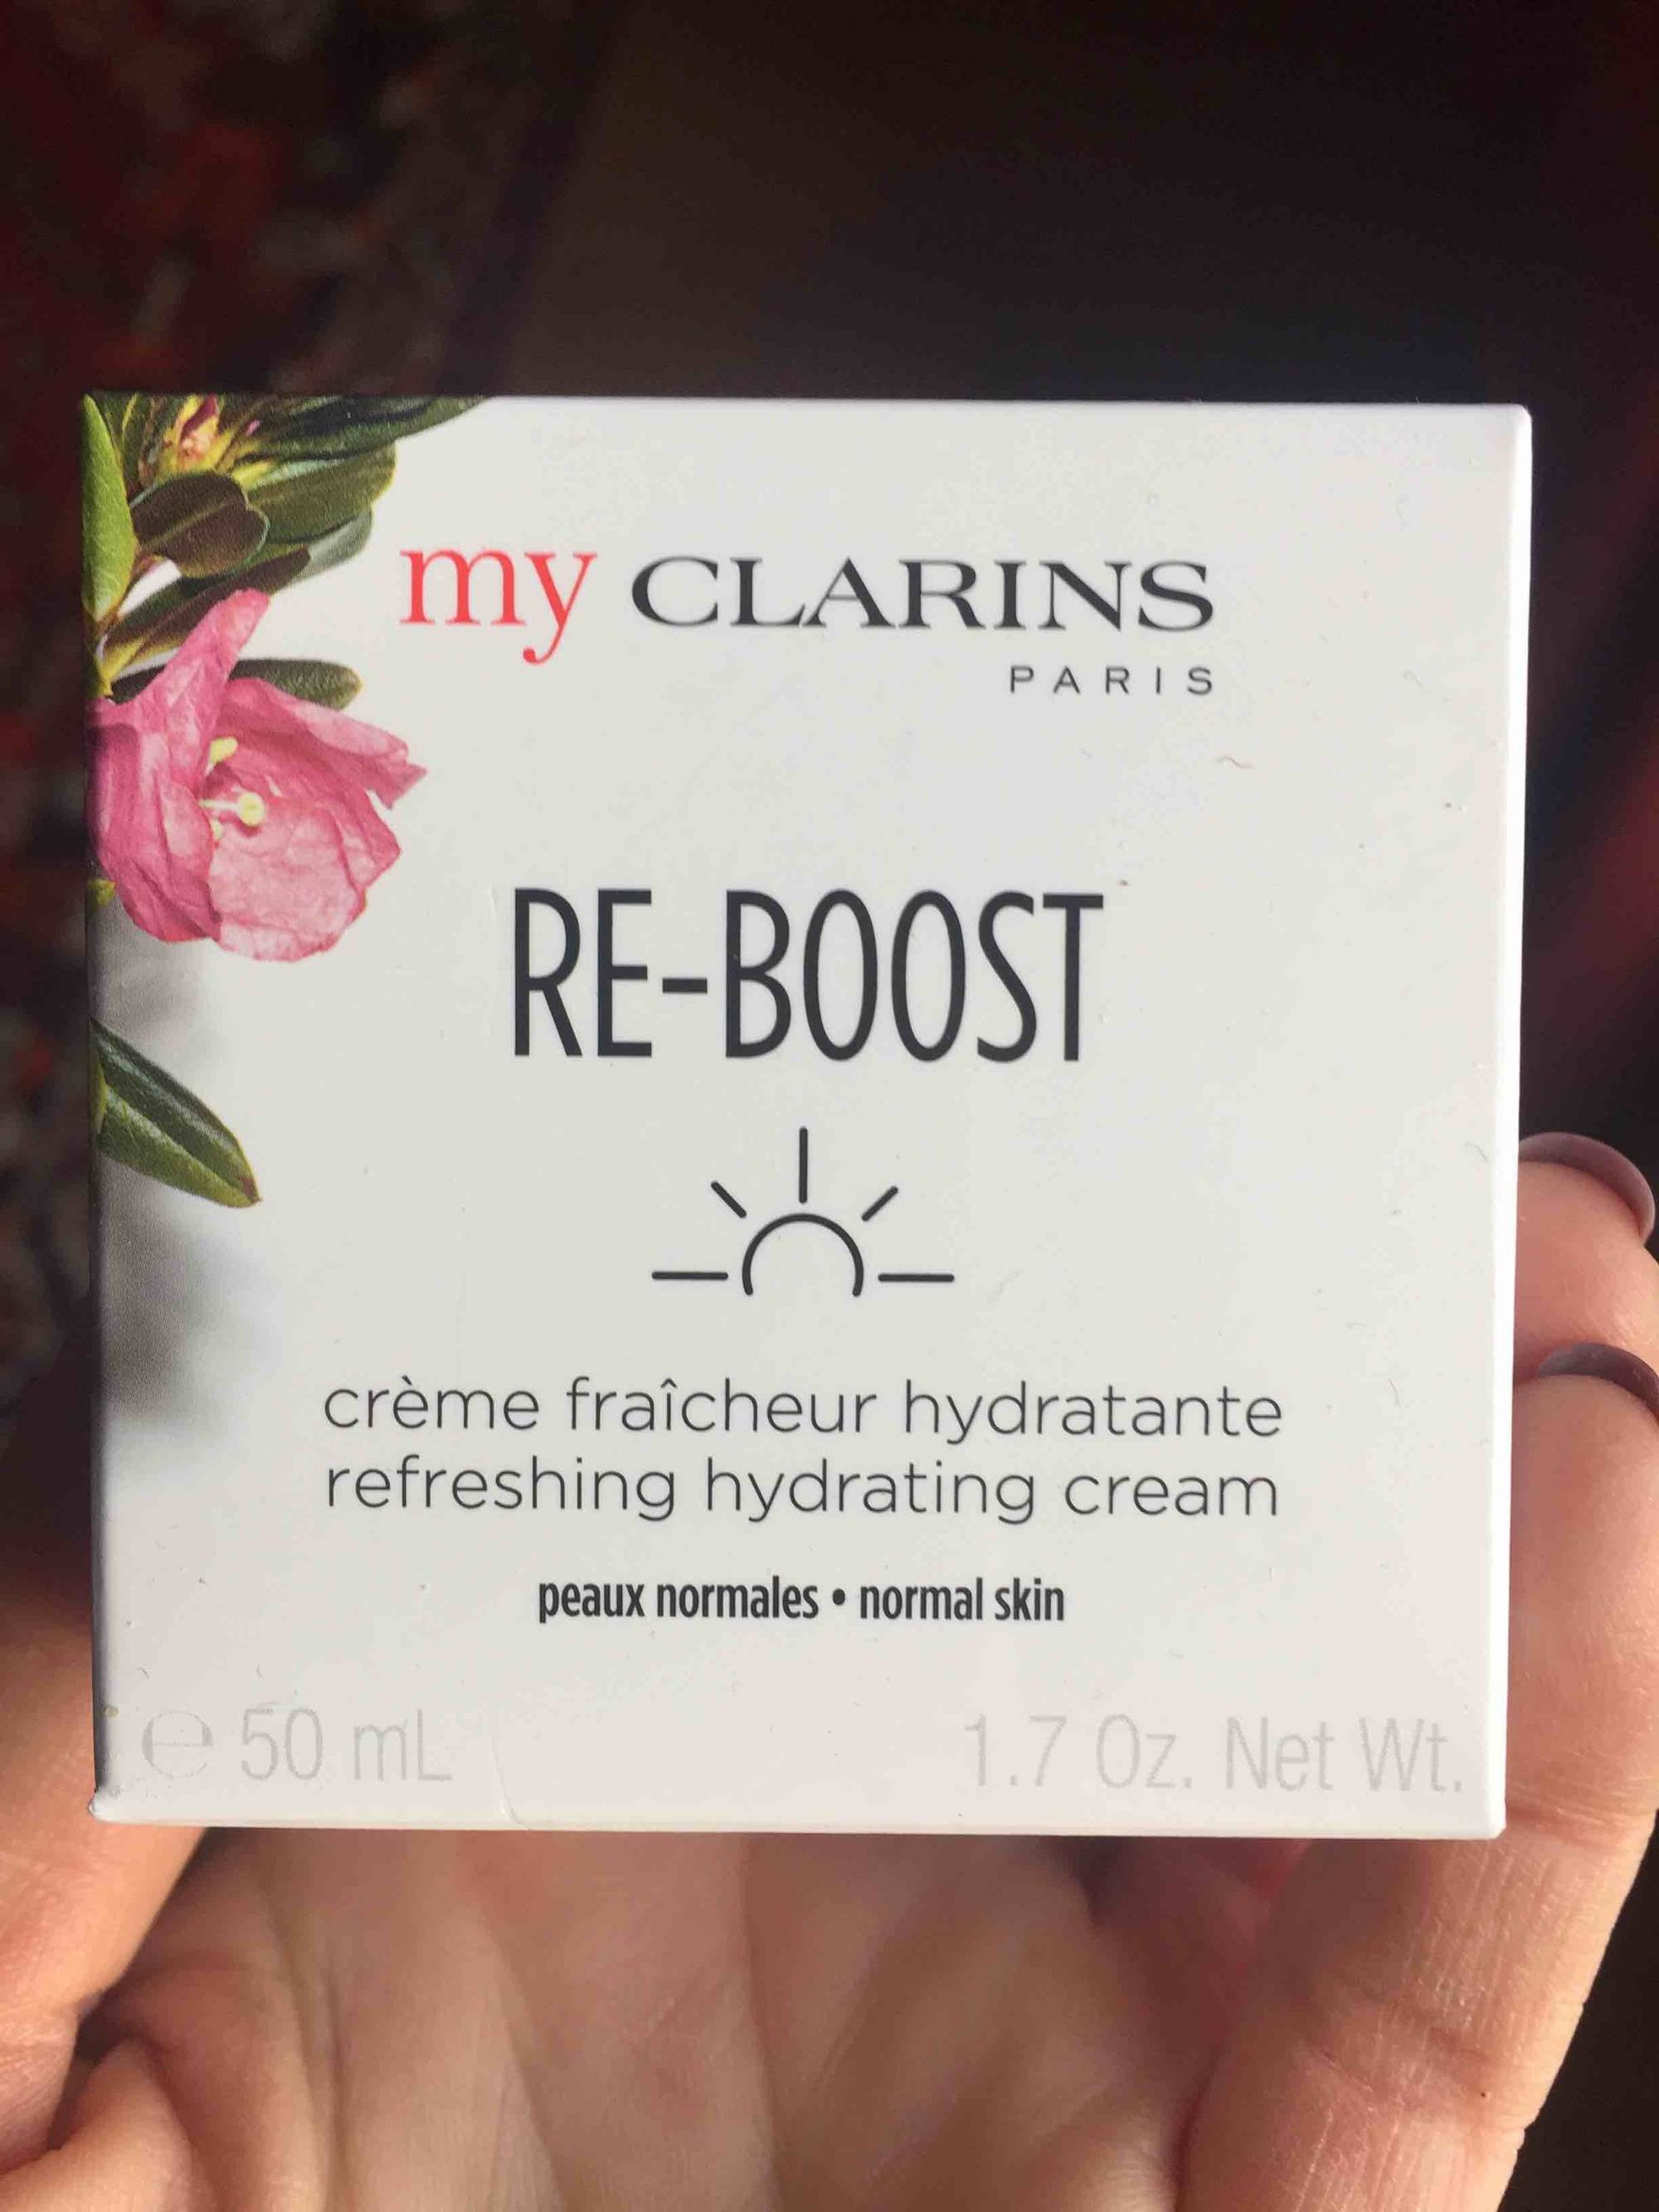 MY CLARINS - Re-boost - Crème fraîcheur hydratante